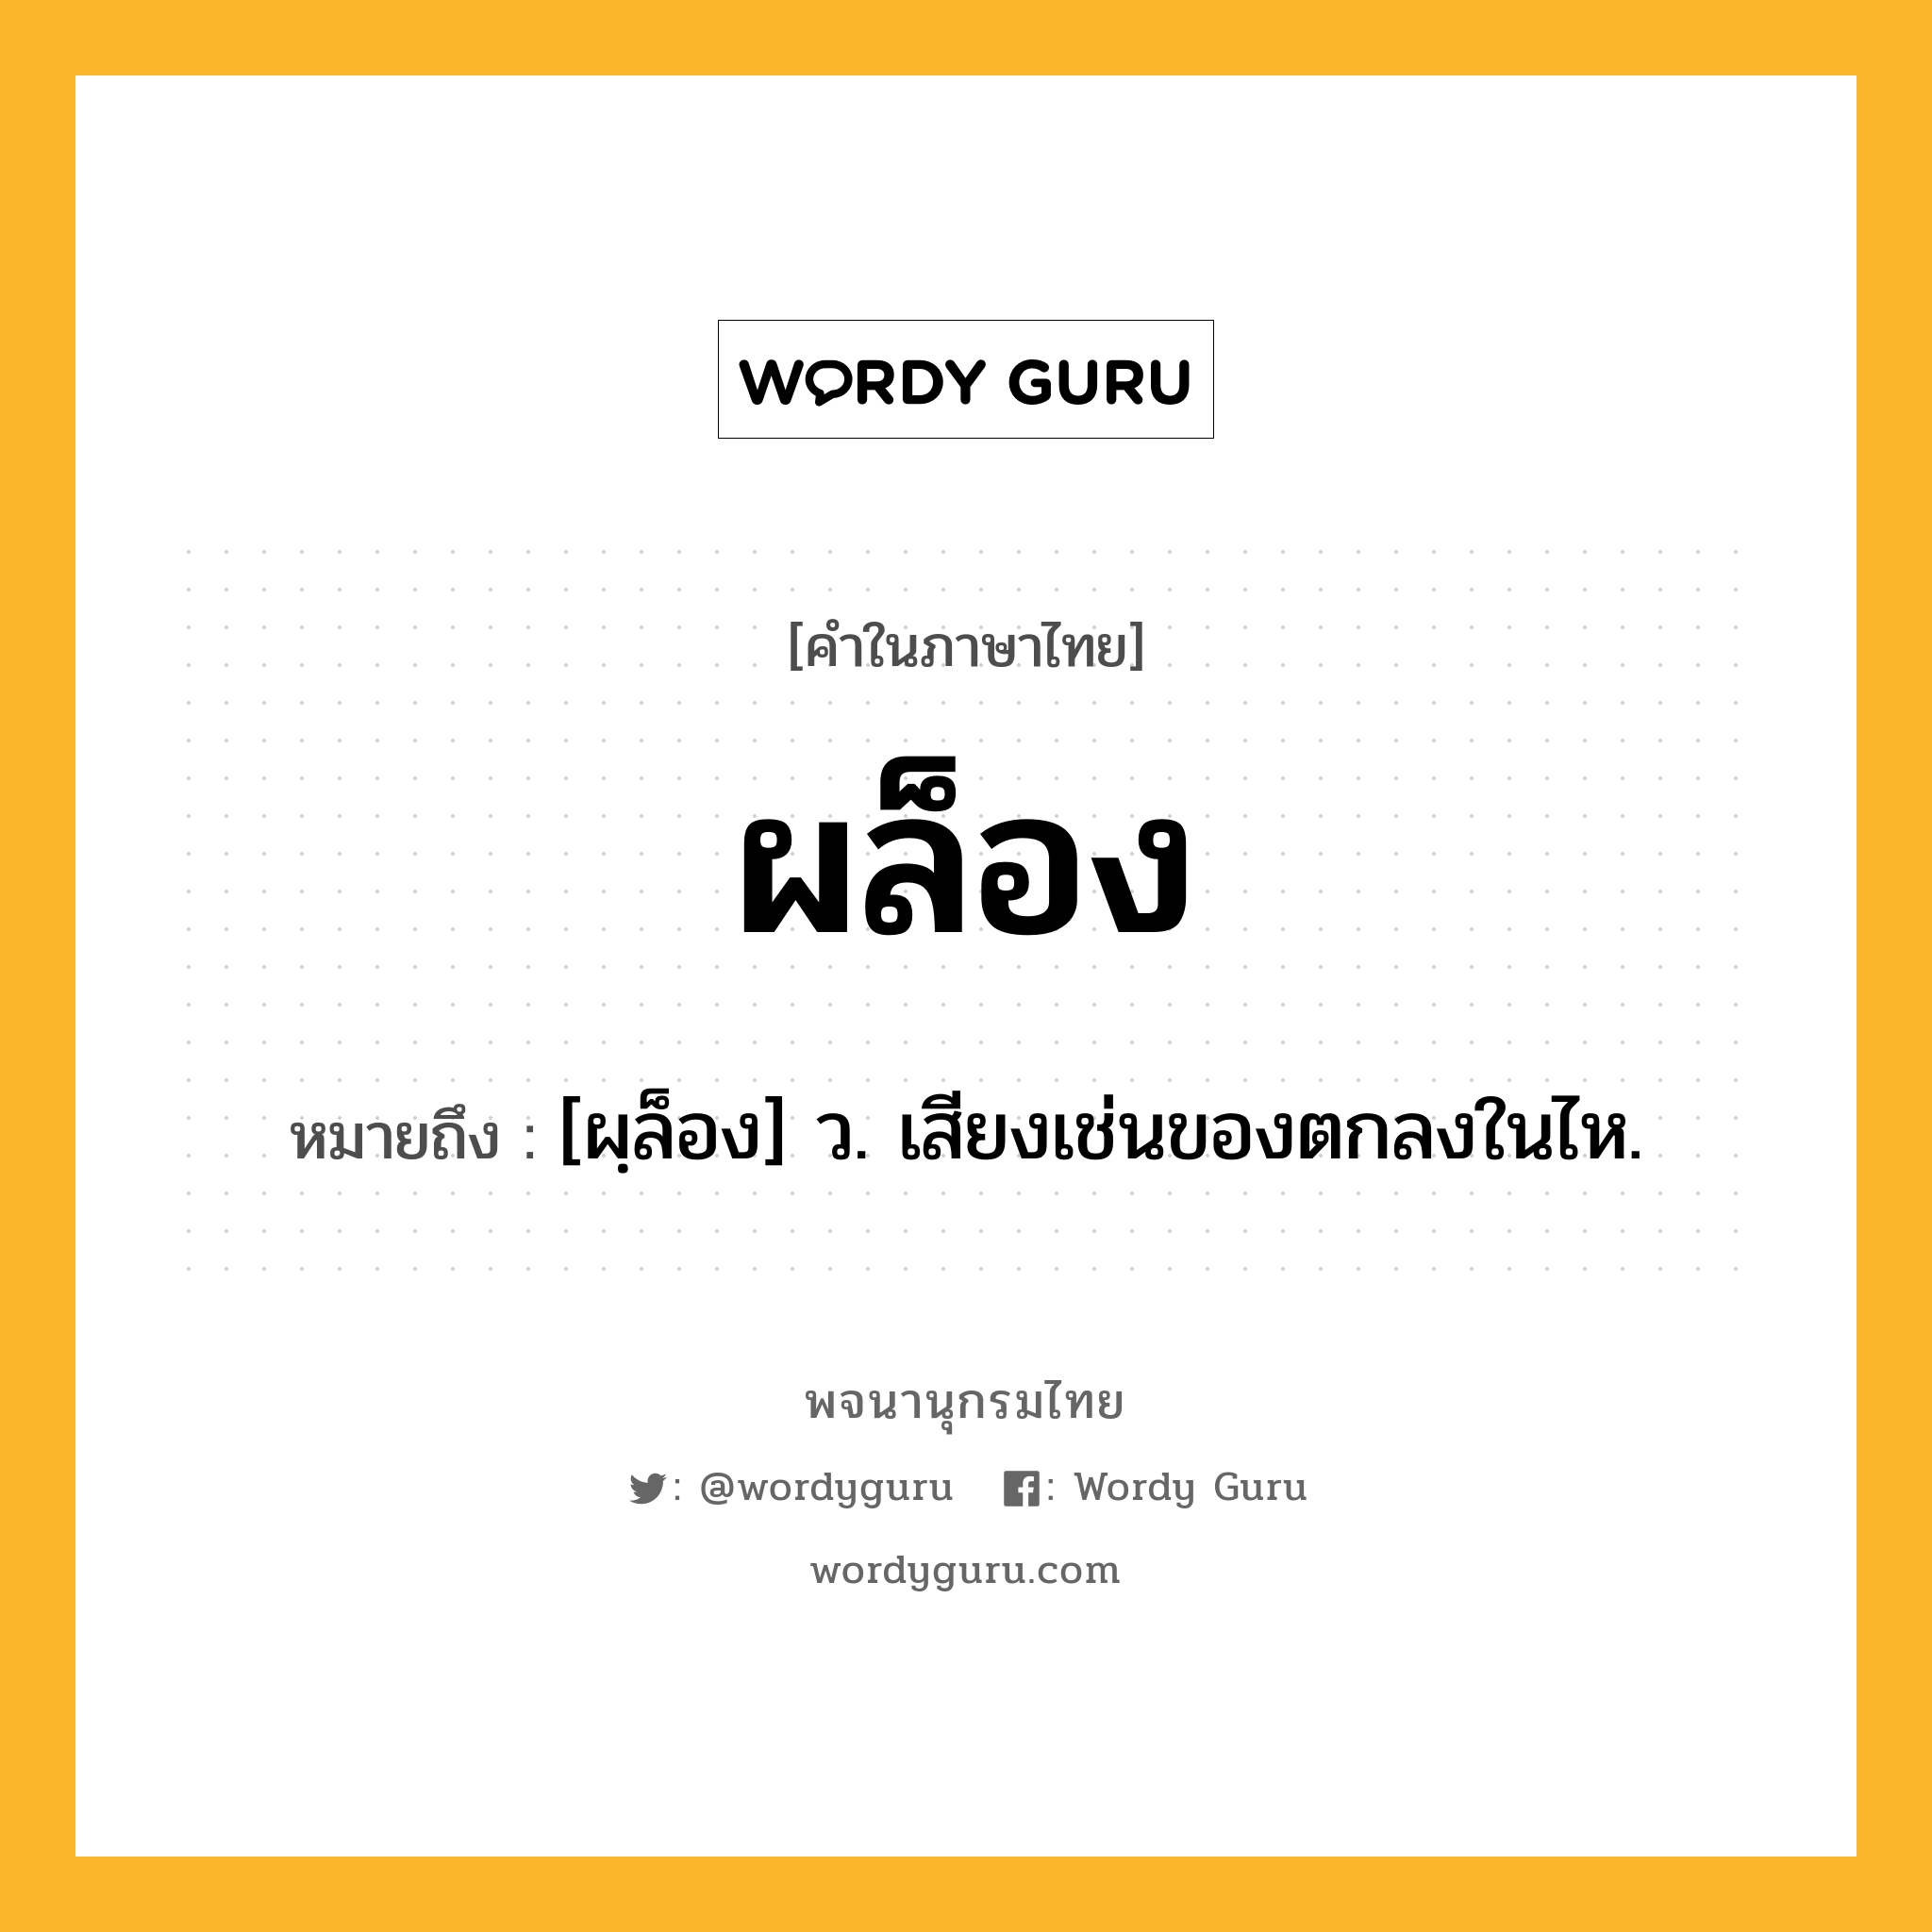 ผล็อง ความหมาย หมายถึงอะไร?, คำในภาษาไทย ผล็อง หมายถึง [ผฺล็อง] ว. เสียงเช่นของตกลงในไห.